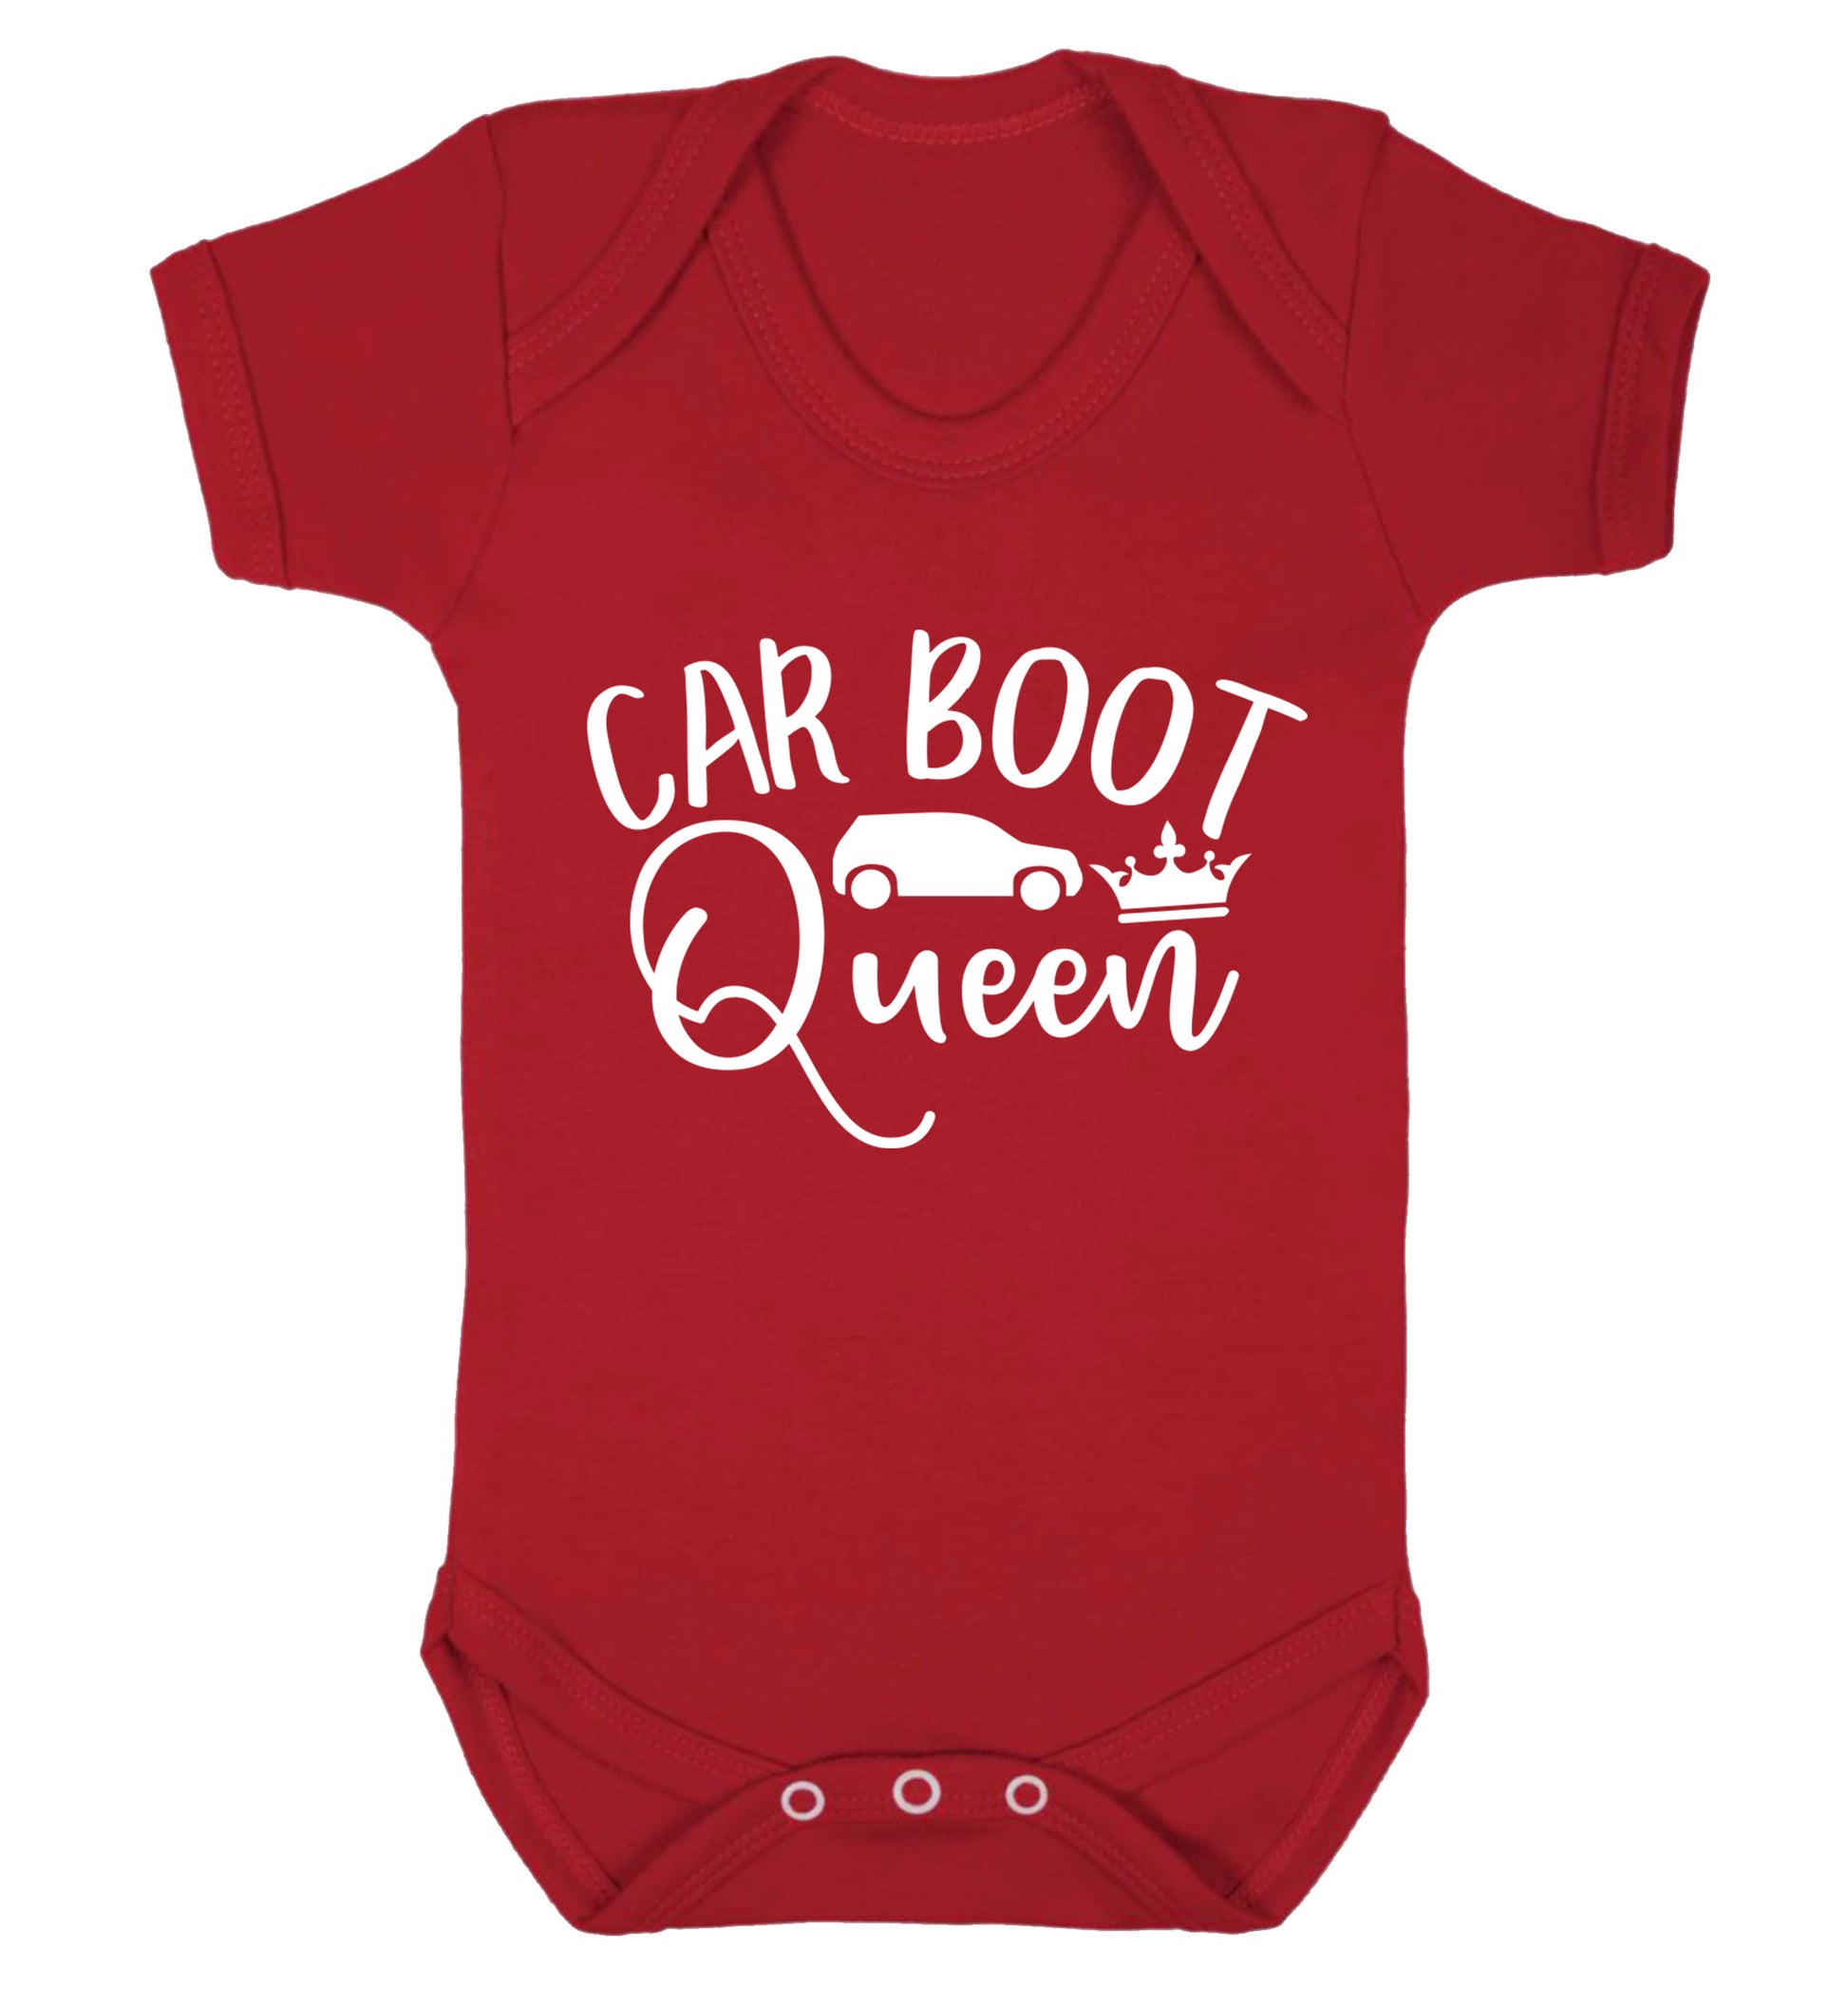 Carboot Queen Baby Vest red 18-24 months